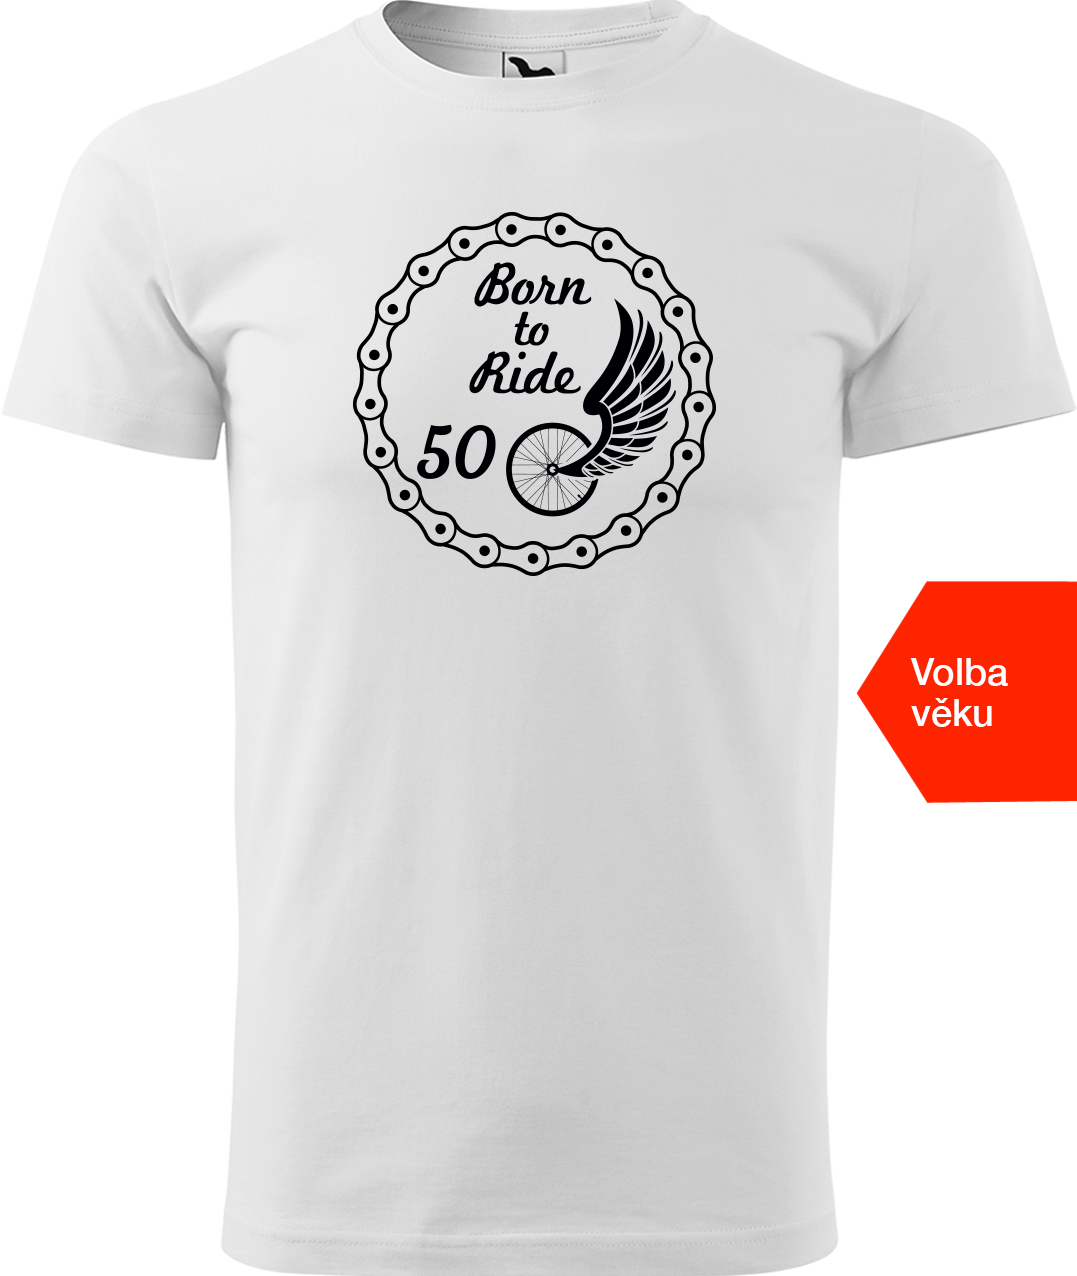 Pánské tričko pro cyklistu s věkem - Born to Ride (wings) Velikost: S, Barva: Bílá (00)